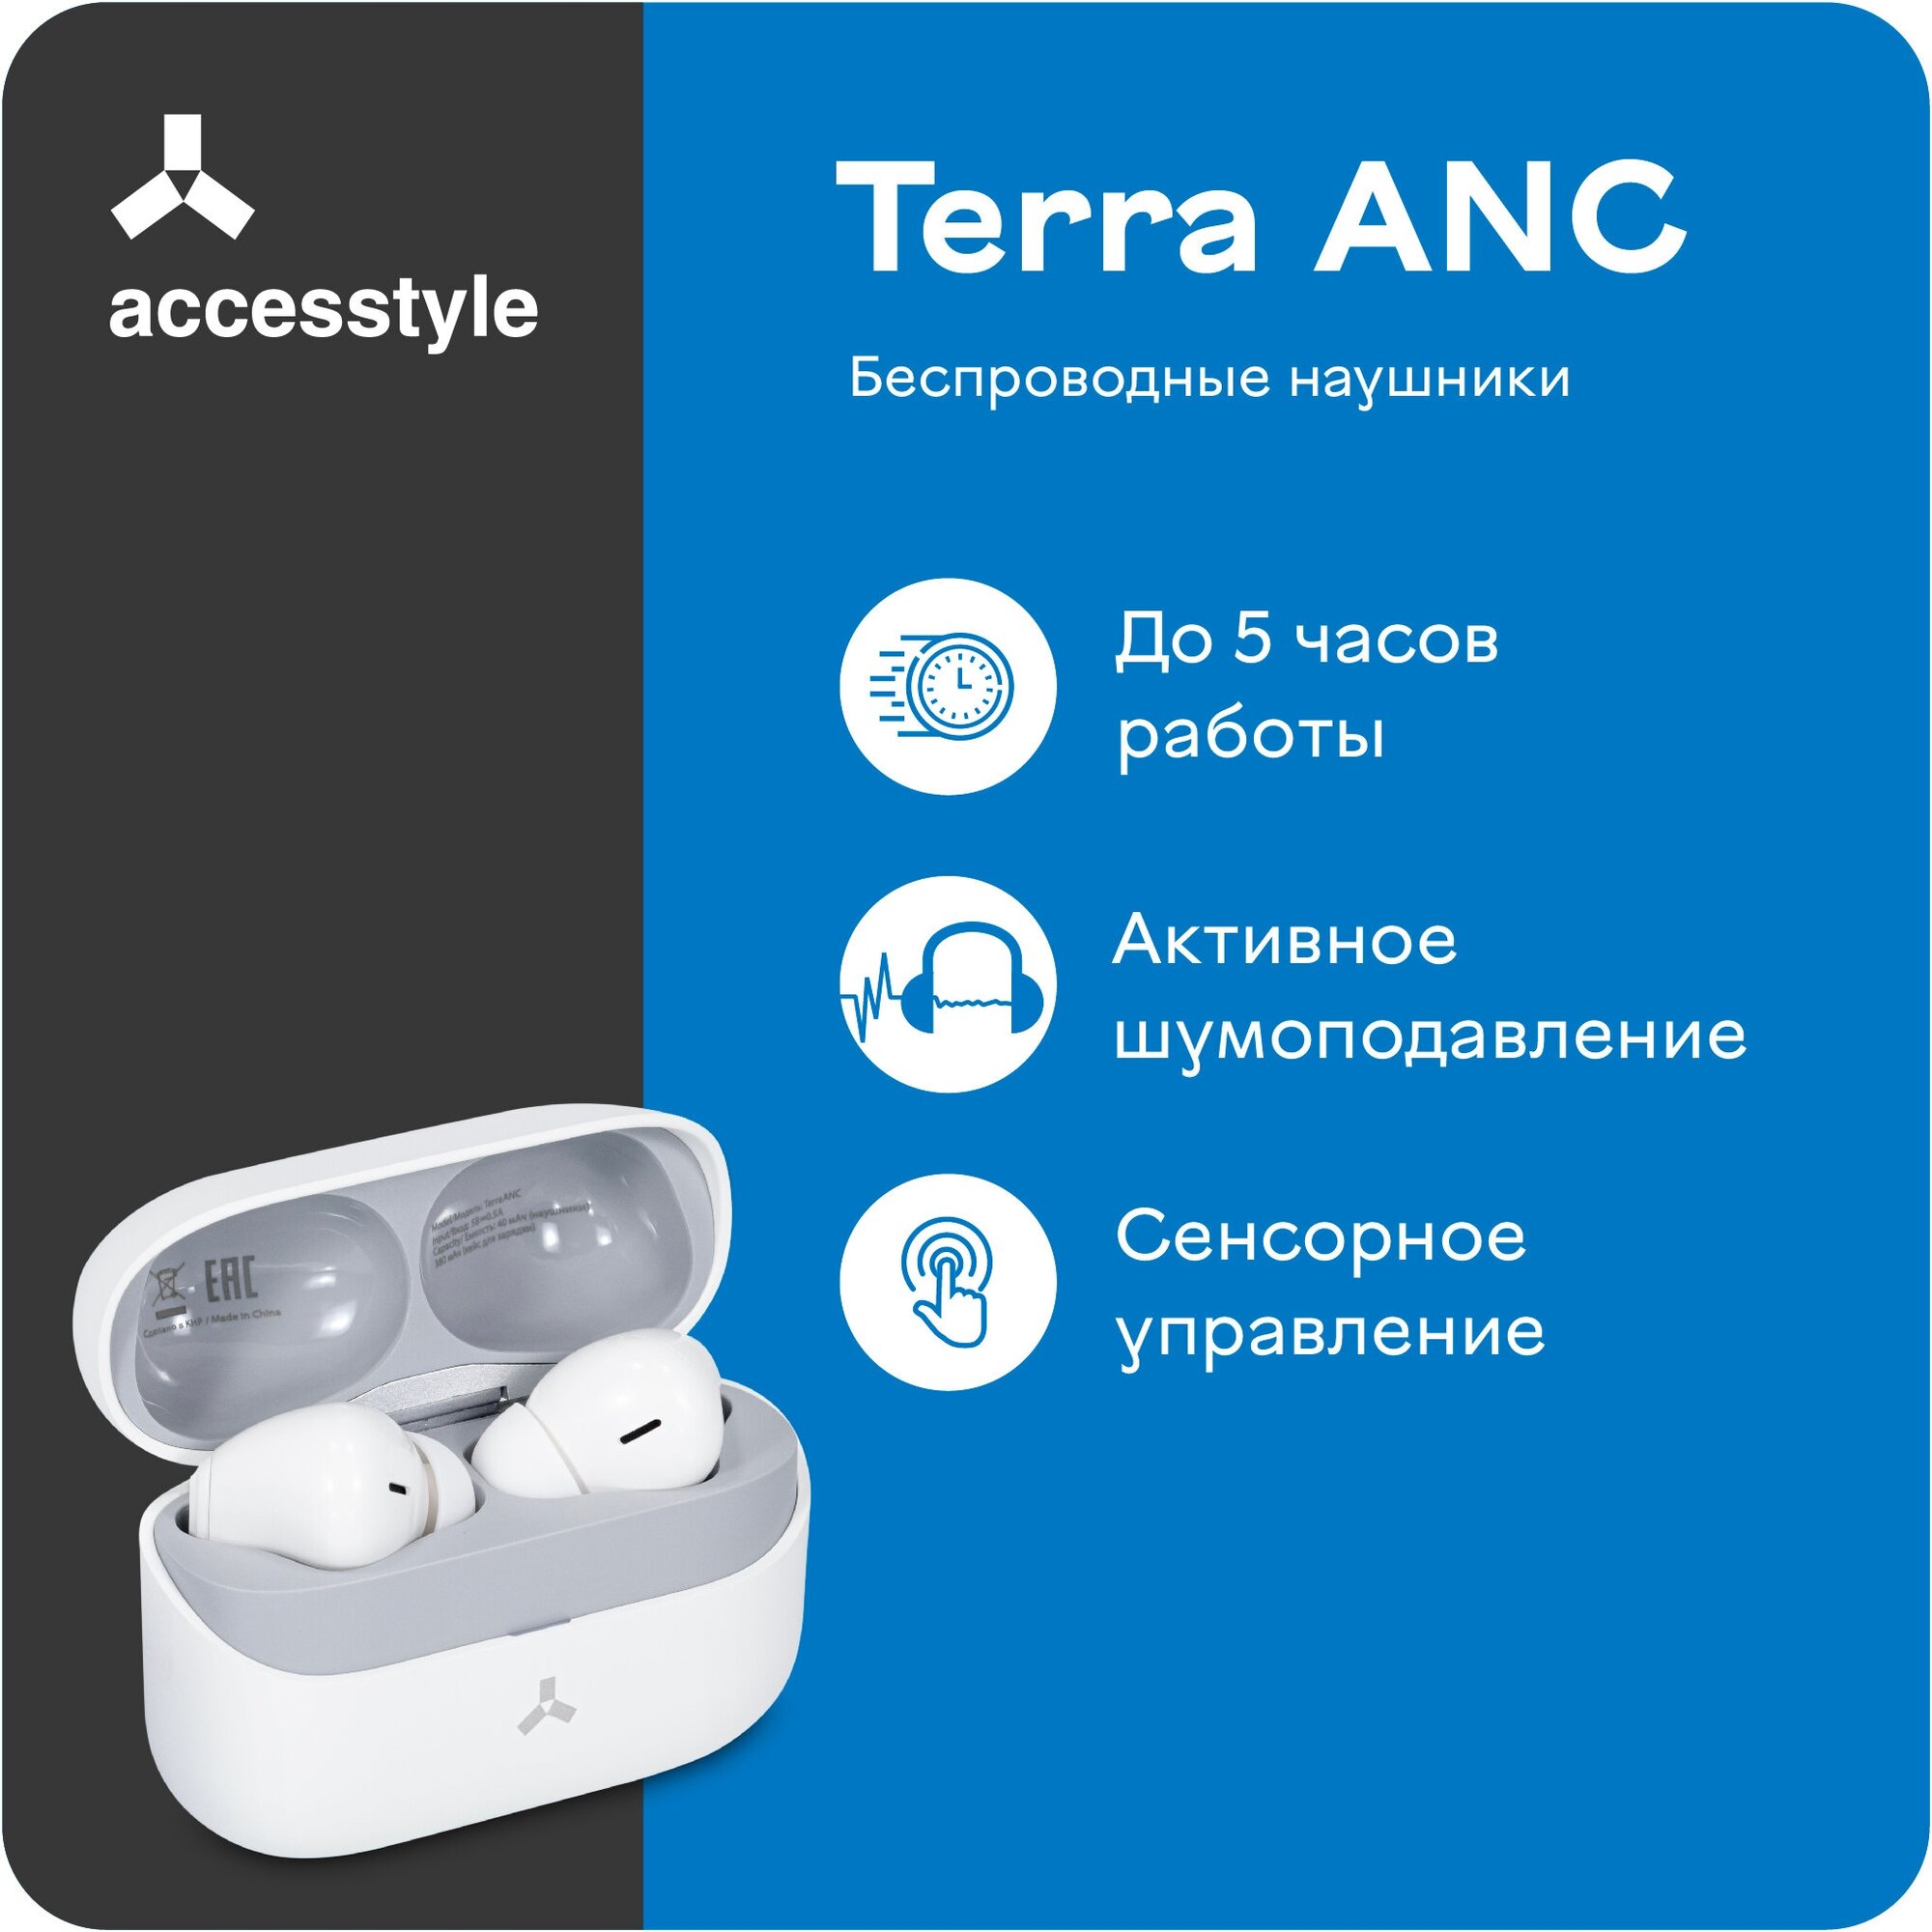 Беспроводные наушники Accesstyle Terra ANC